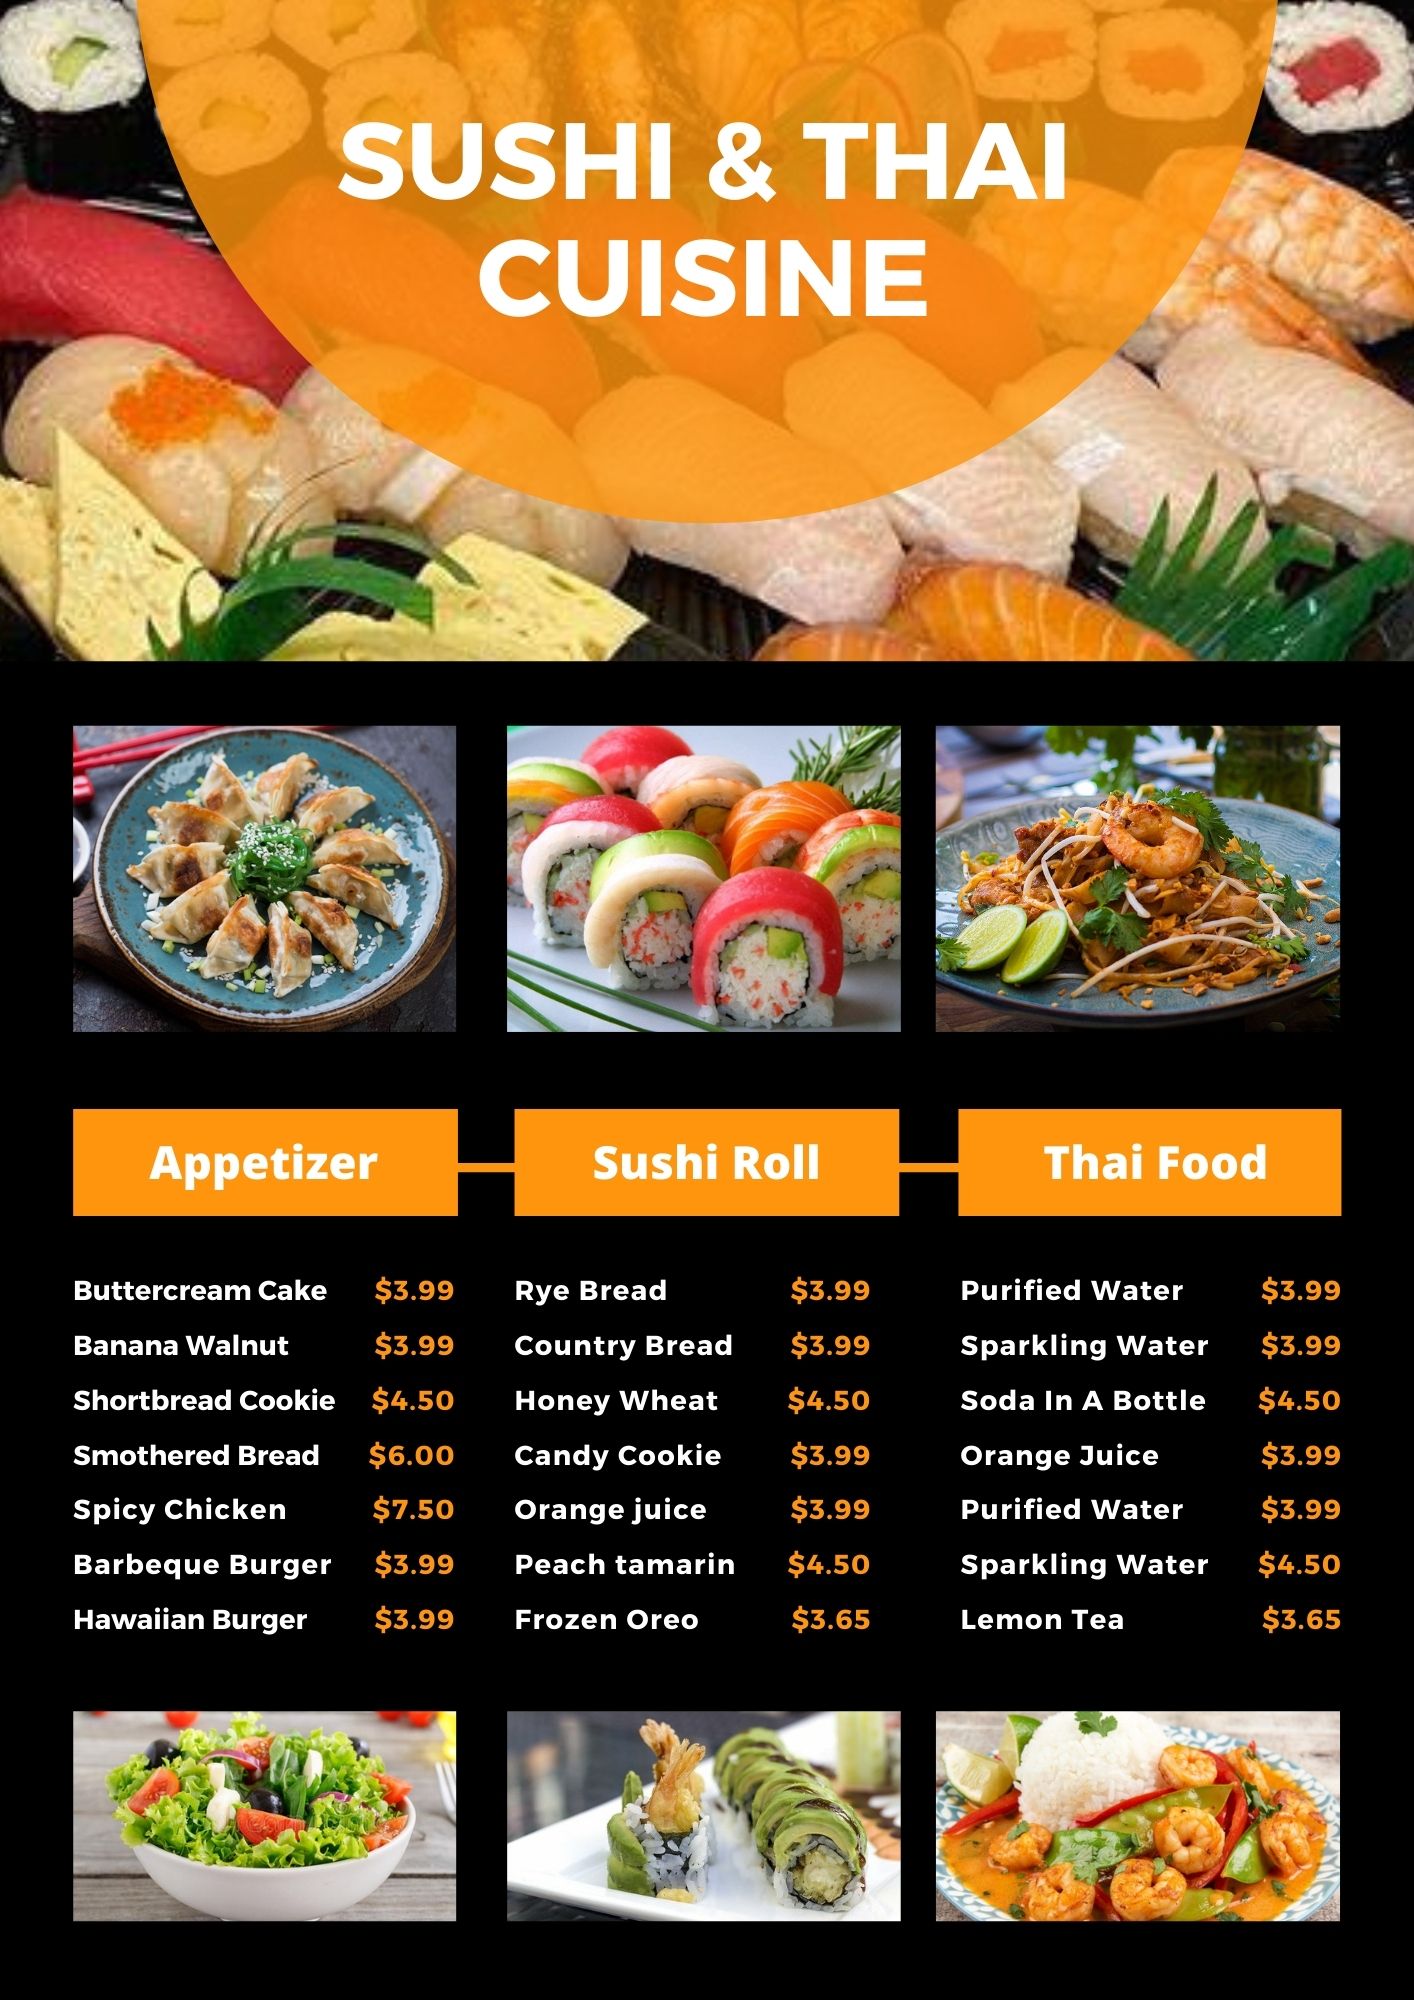 Sushi & Thai Cuisine